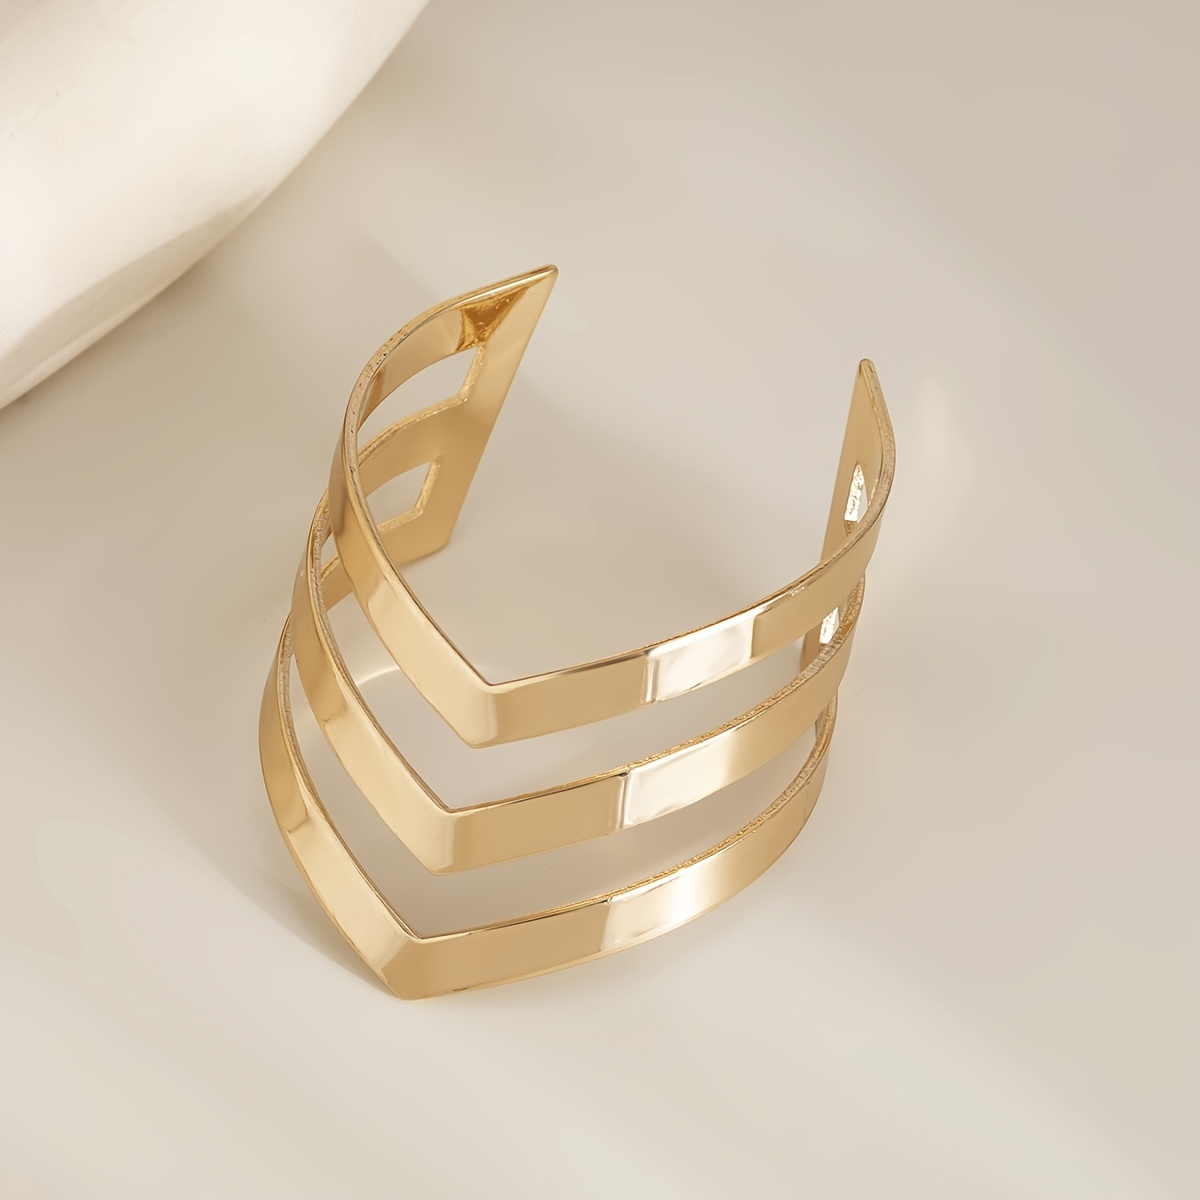 Bracelet Brass for Men Women bracelet Anniversary Gift 